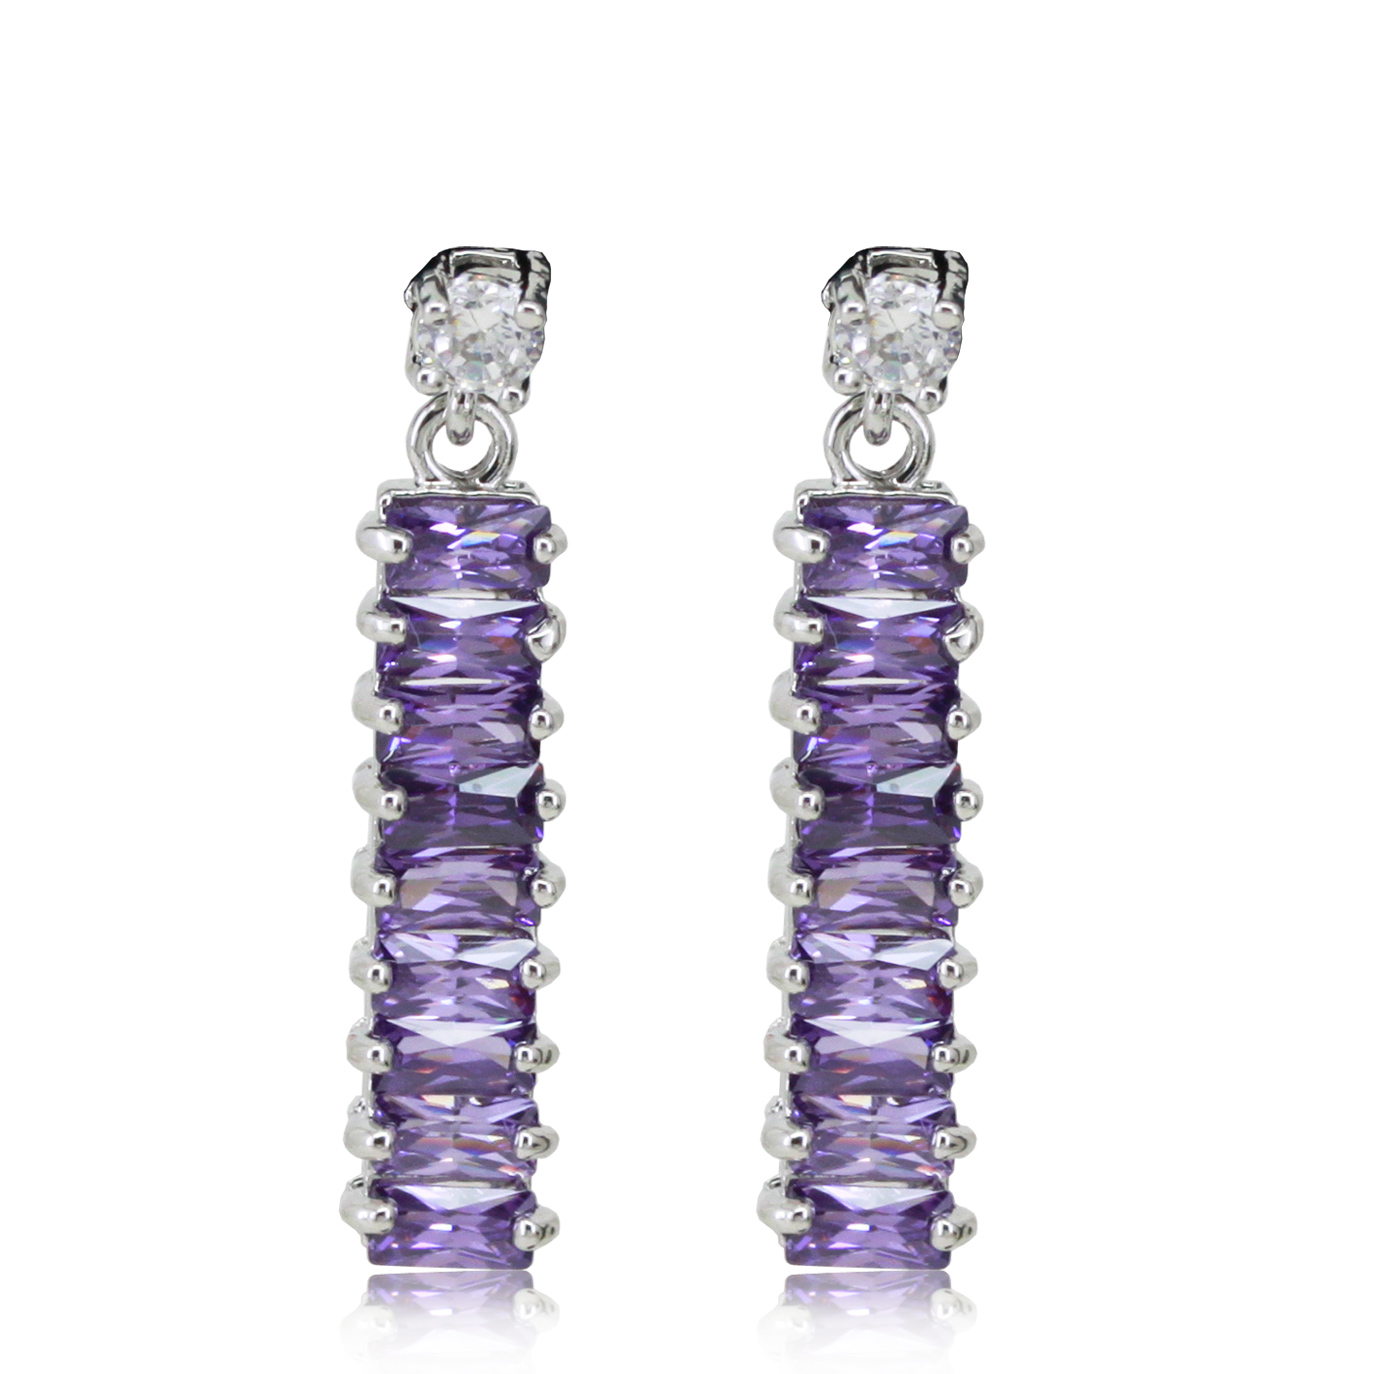 Honey purple women s earrings zircon k gold fashion stud earring earrings